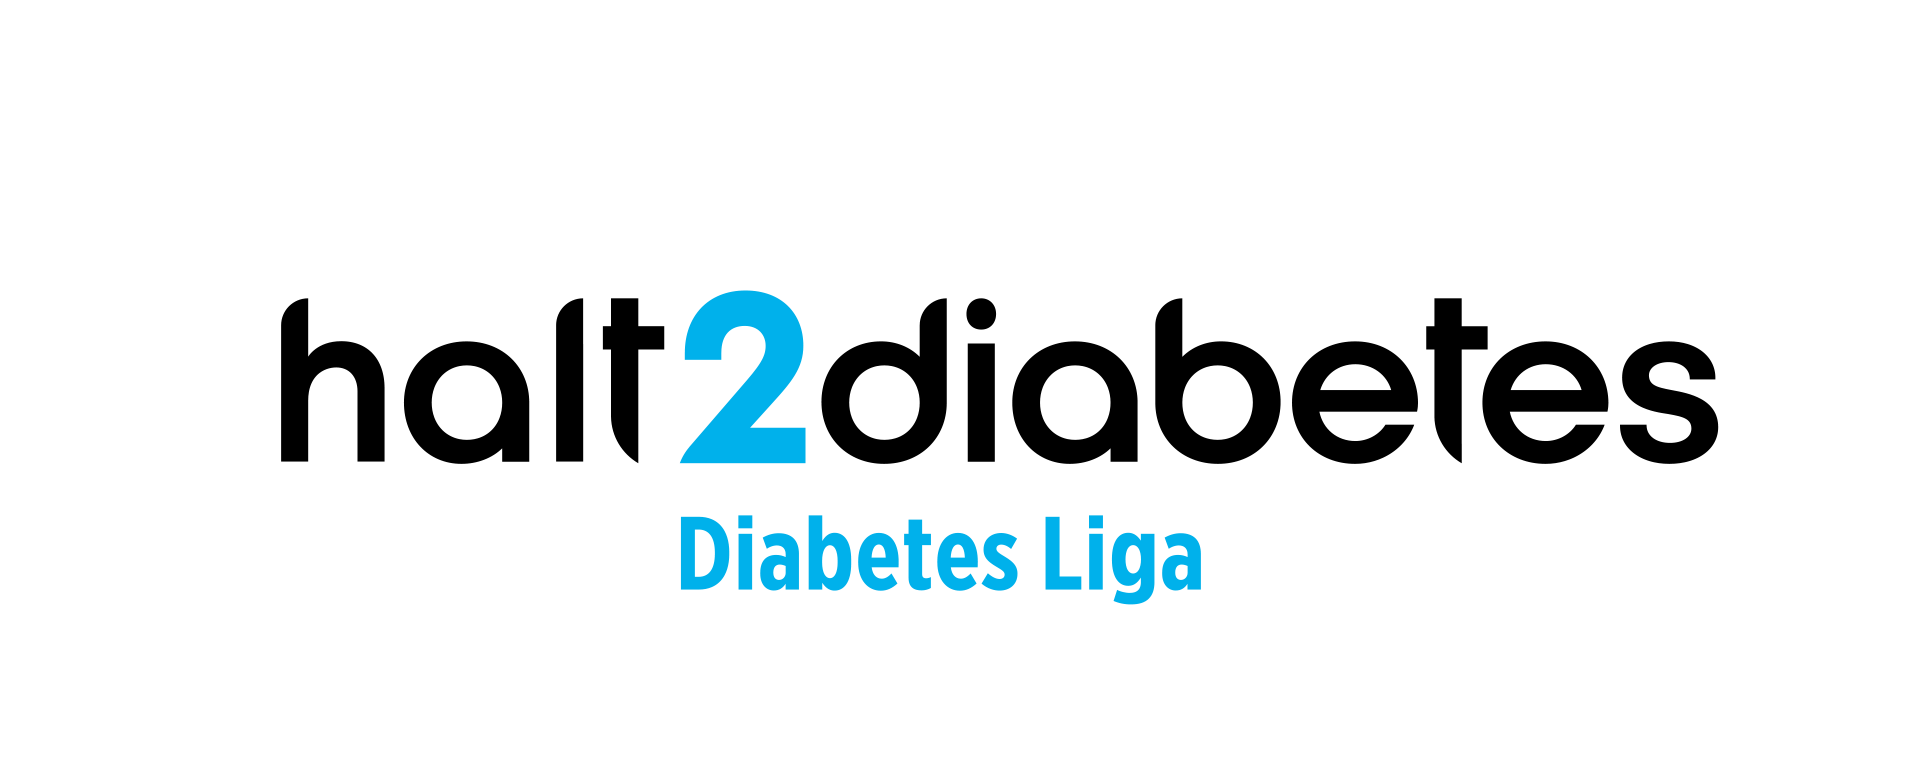 halt2diabetes logo